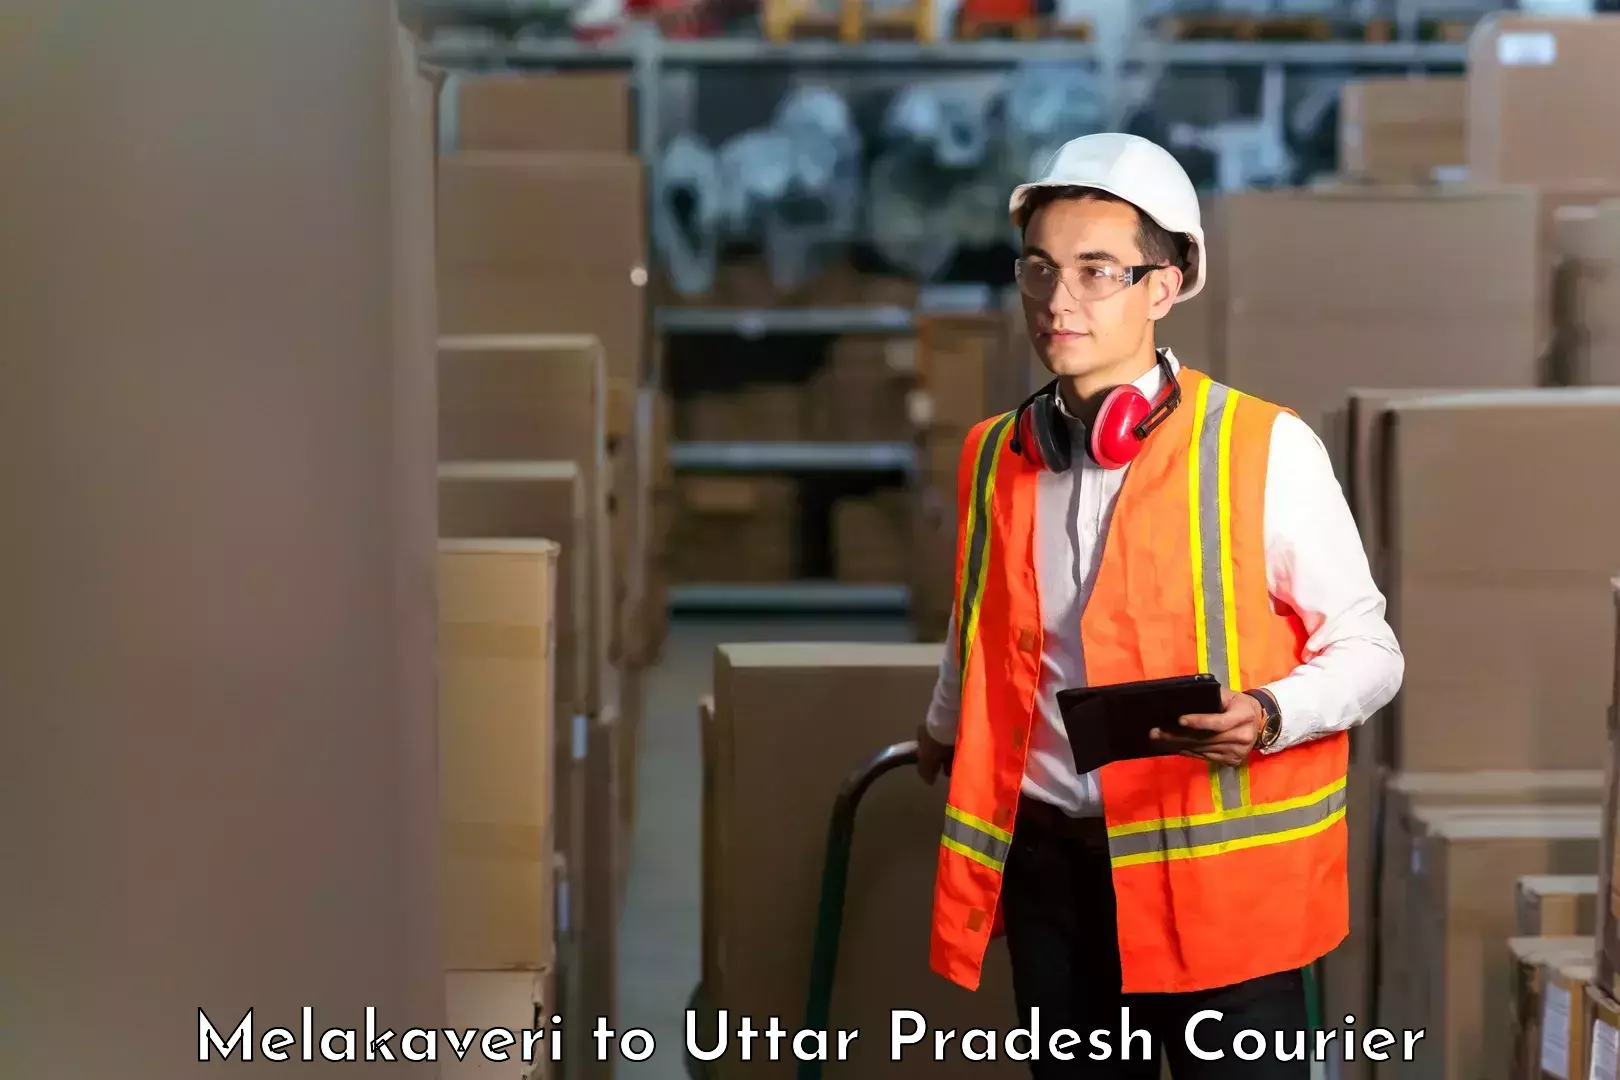 Reliable delivery network Melakaveri to Uttar Pradesh